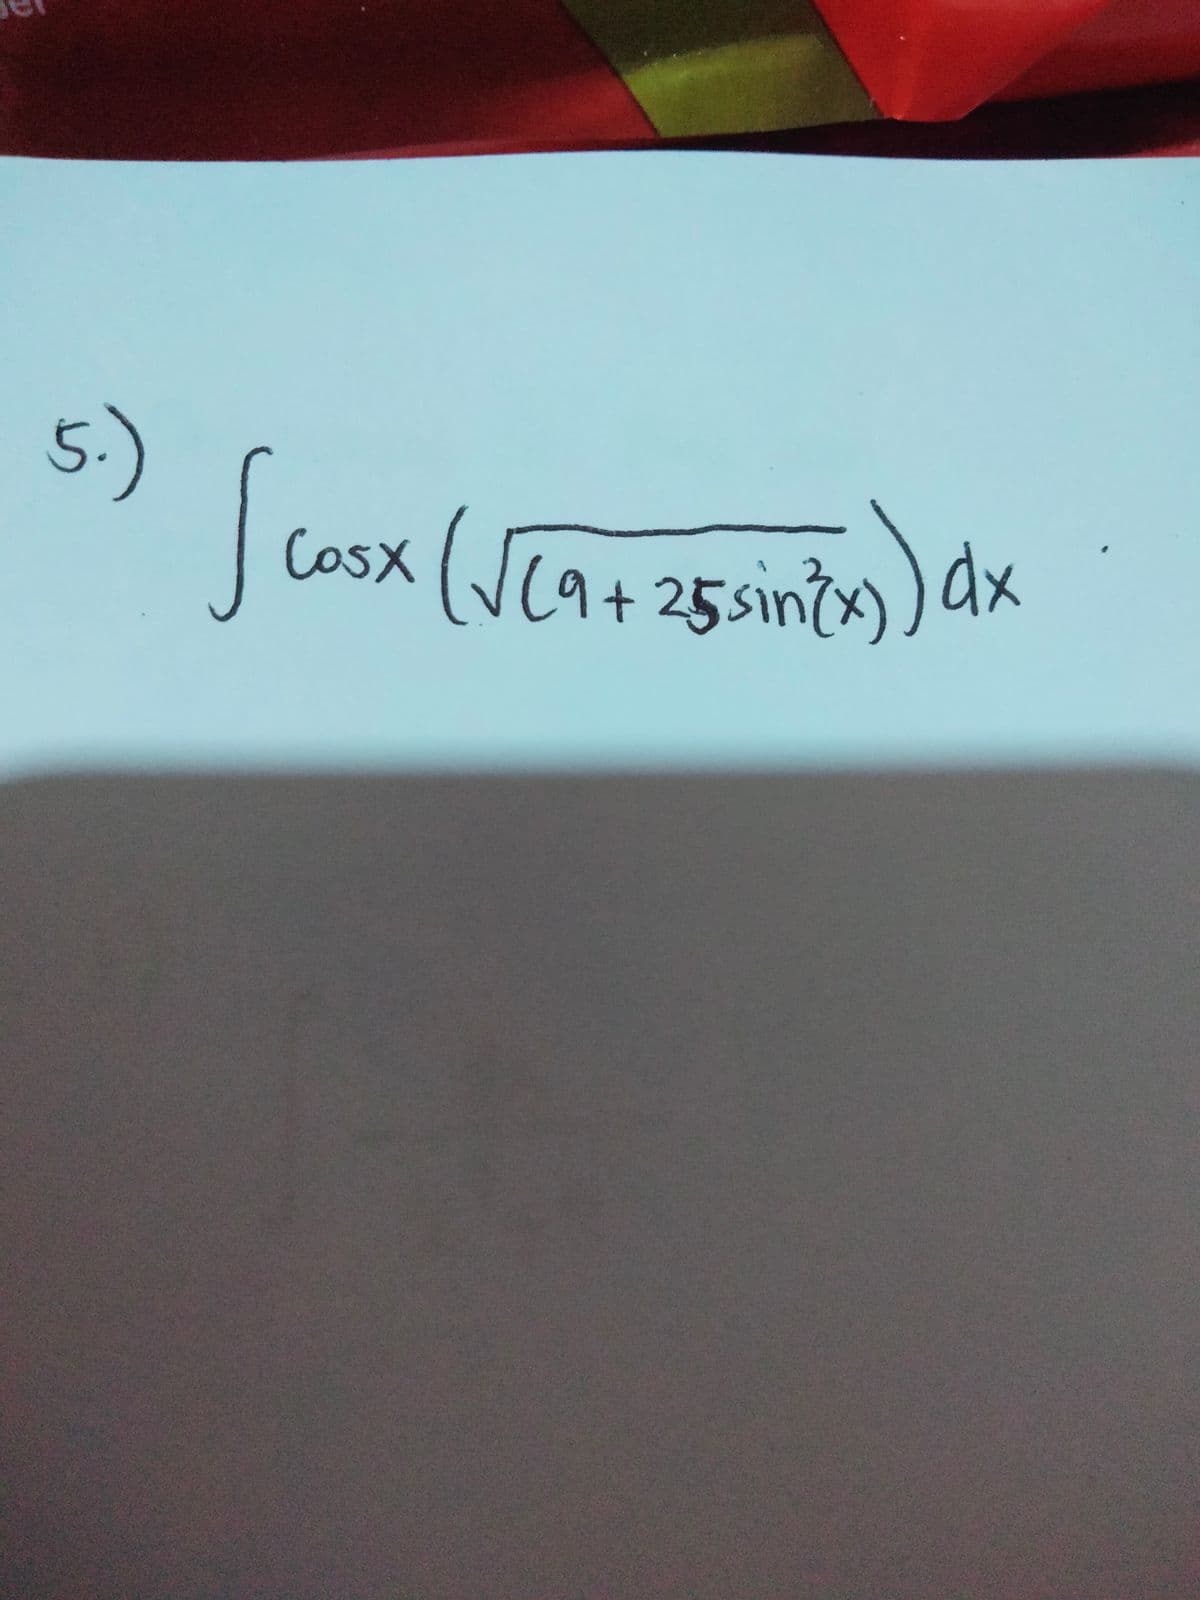 5.)
cosx (Ve9725 sinzy) dx
[9+25sin³x)